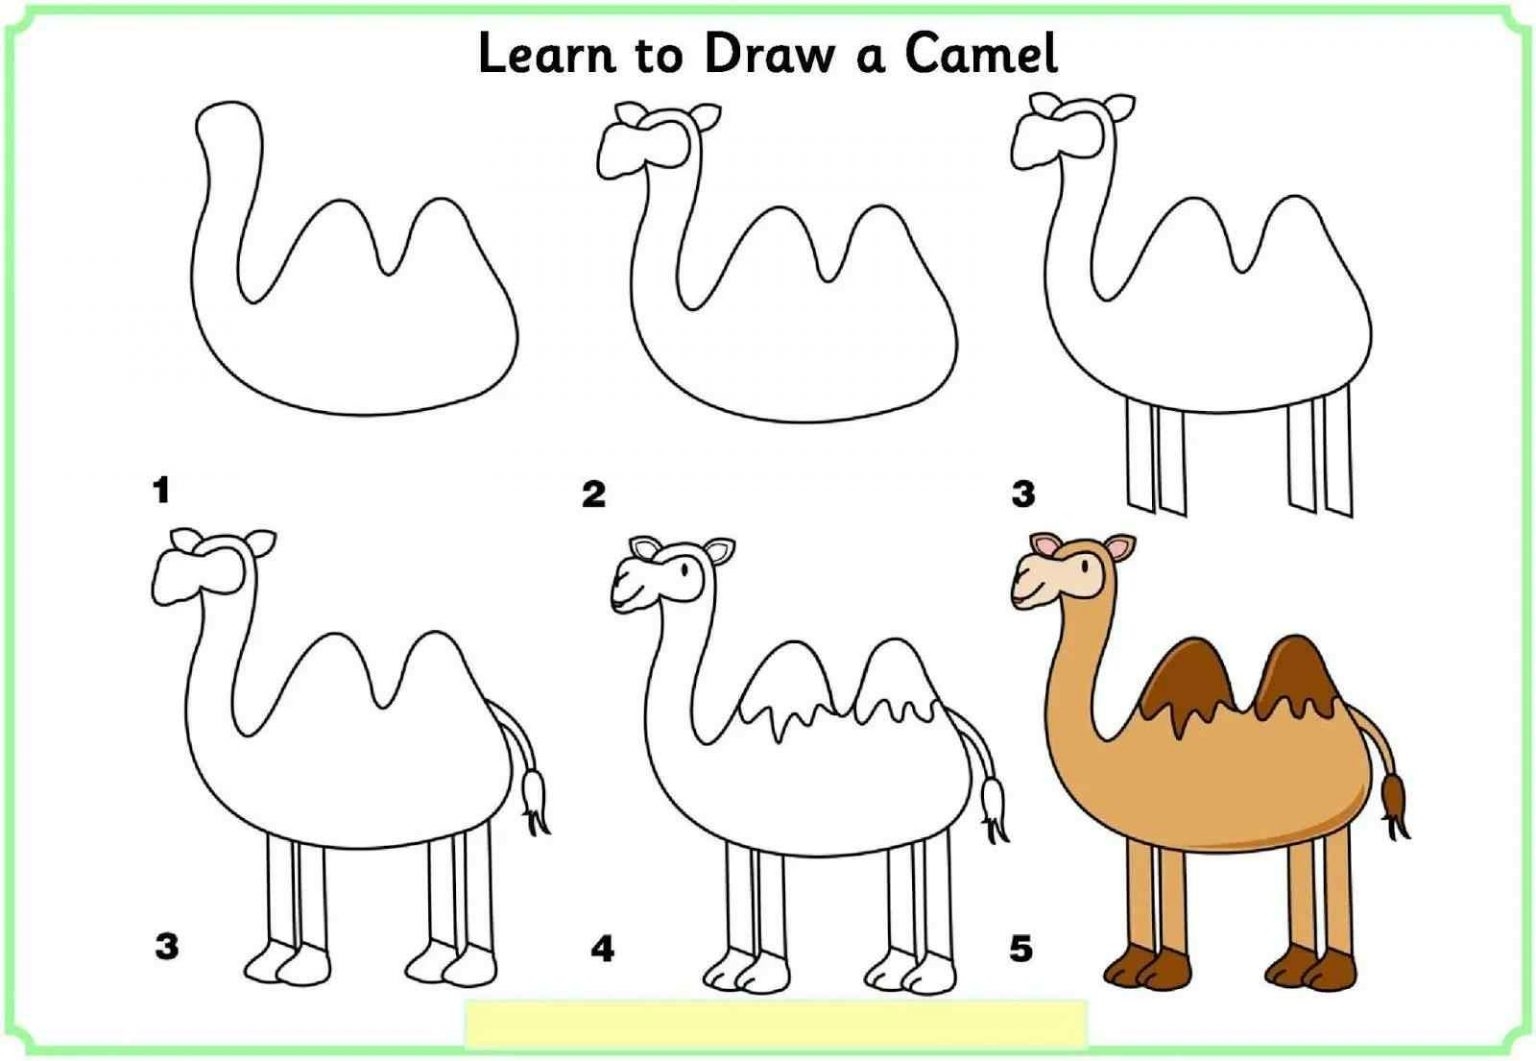 Рисунок верблюд